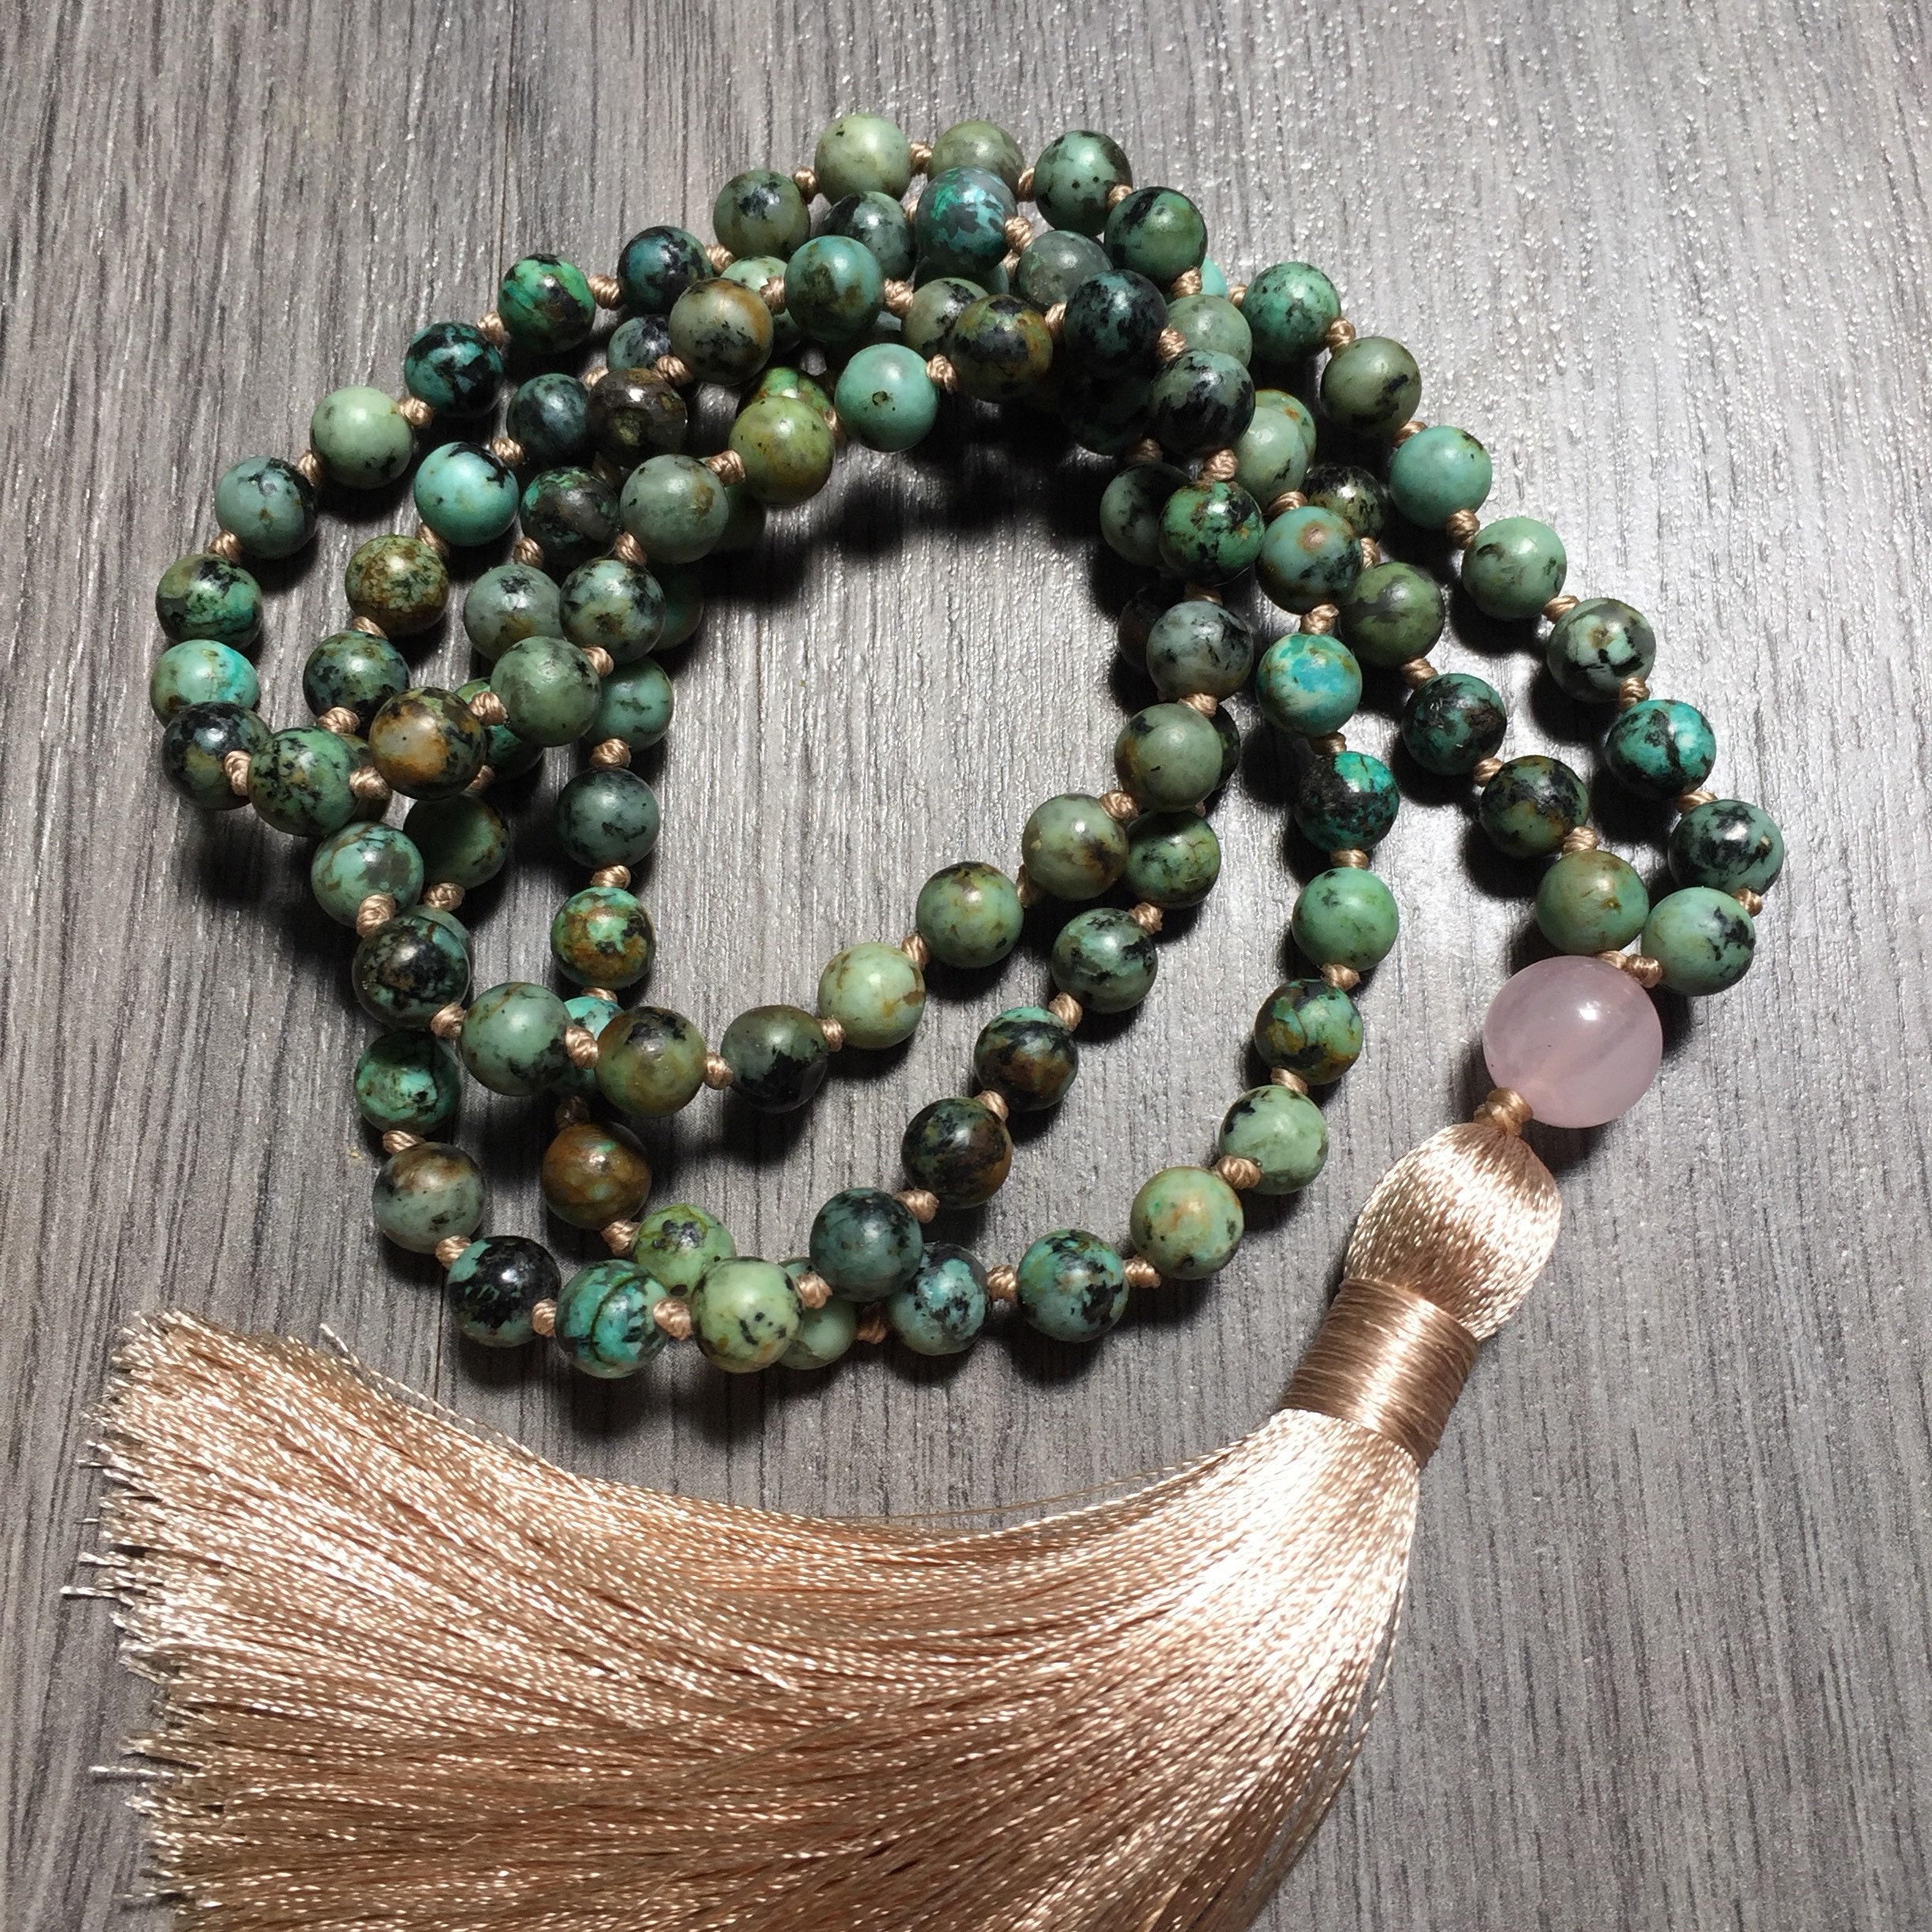 POSITIVE CHANGES Mala Necklace Turquoise Mala Beads Rose | Etsy